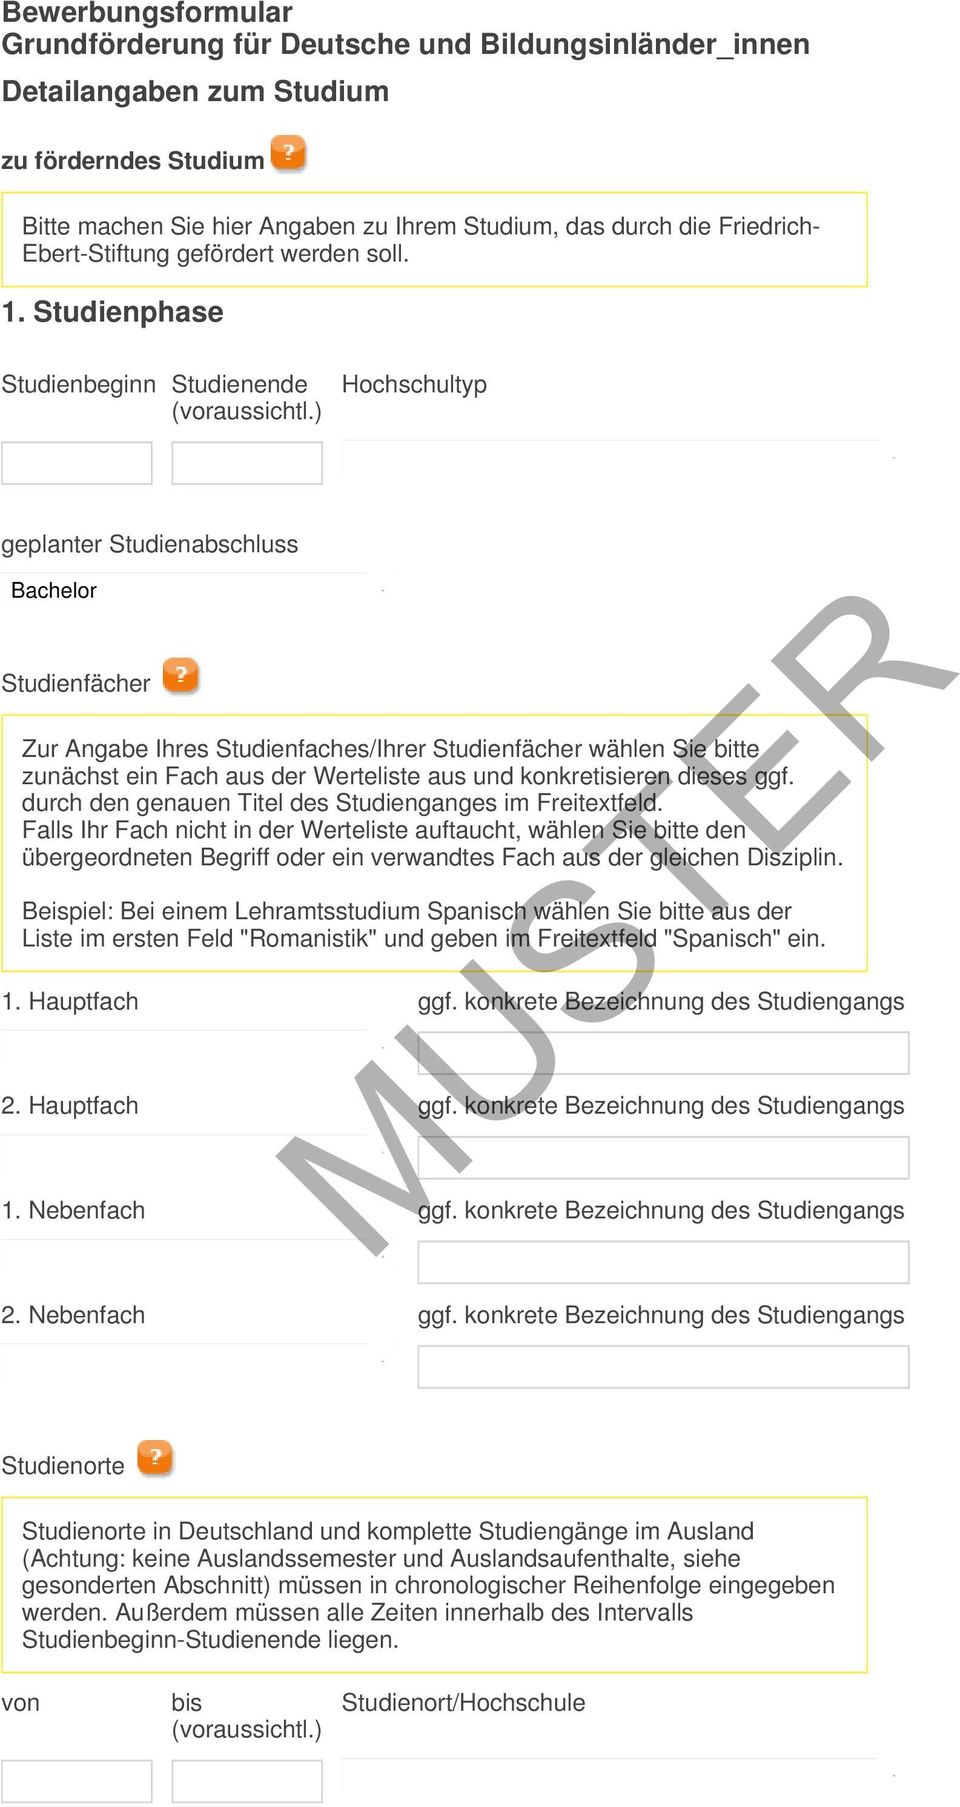 Muster Bewerbungsformular Grundforderung Fur Deutsche Und Bildungsinlander Innen Angaben Zur Person Aktuelle Anschrift Pdf Free Download